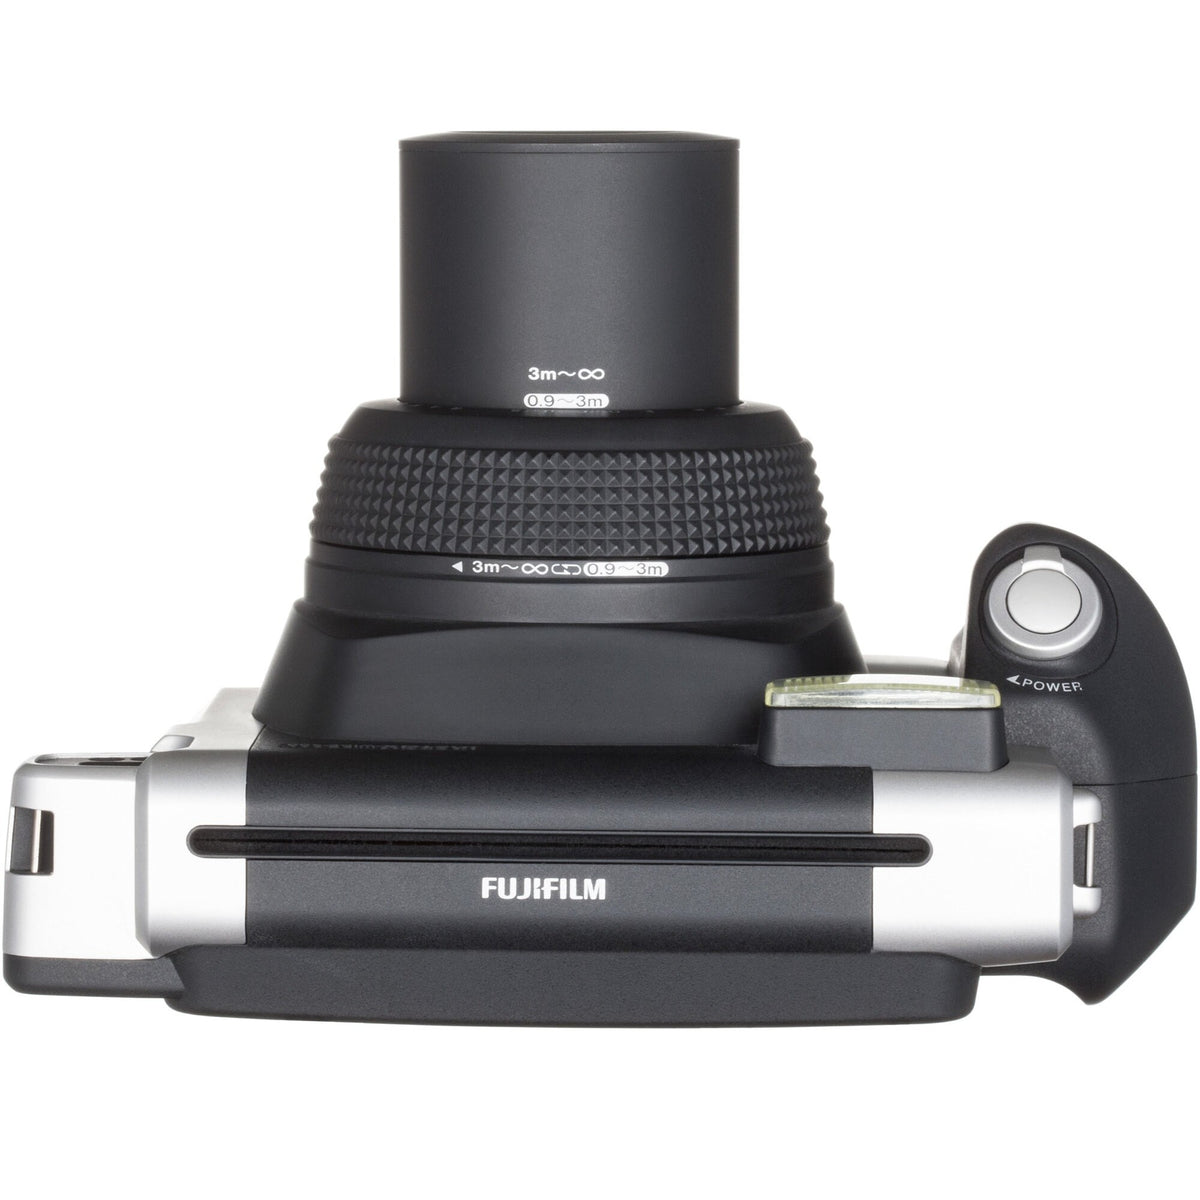 Fotoaparát Fujifilm Instax Wide 300, černá/stříbrná